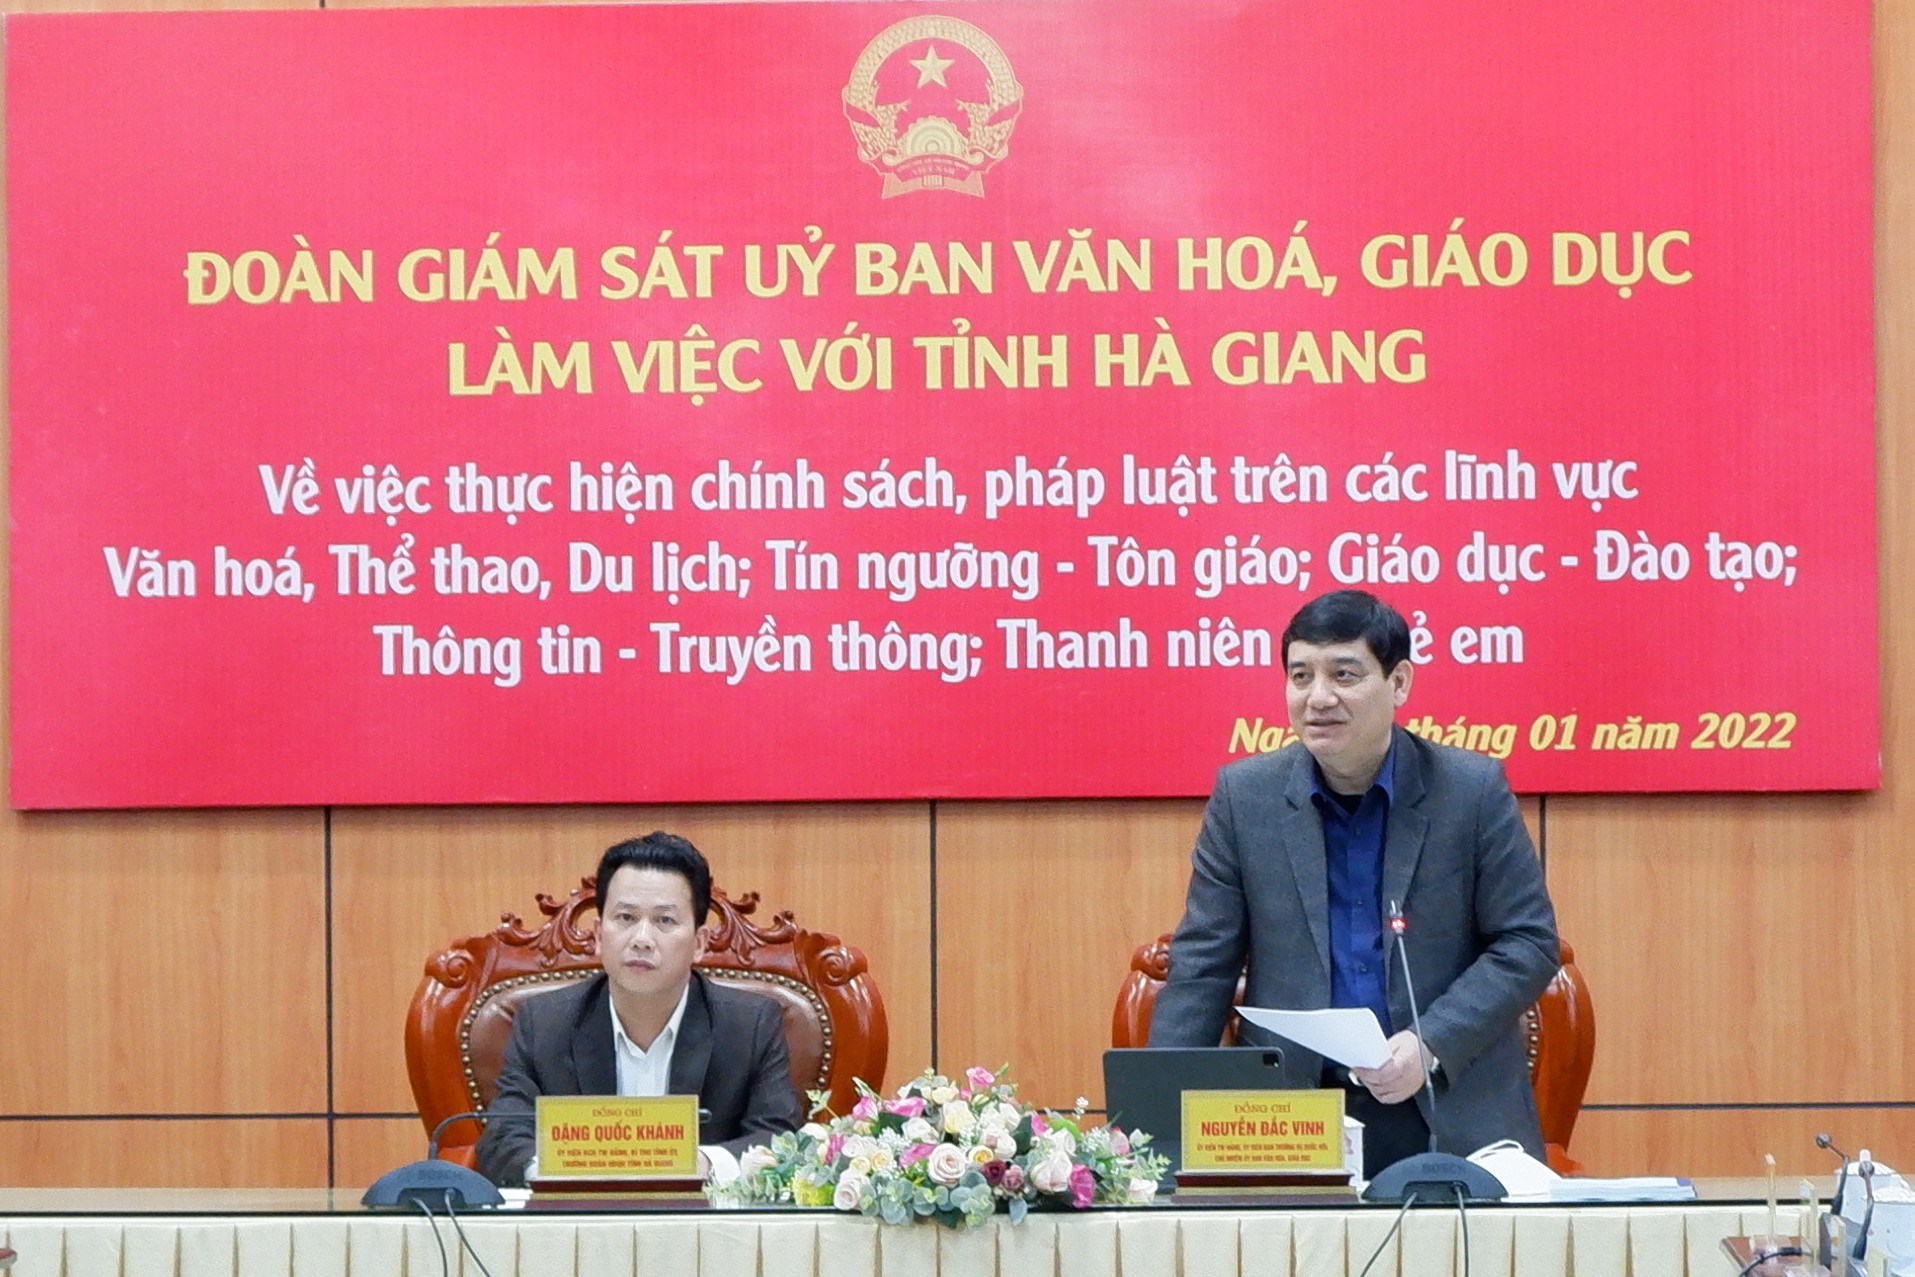 Chủ nhiệm Ủy ban Văn hóa, Giáo dục Nguyễn Đắc Vinh phát biểu tại cuộc làm việc